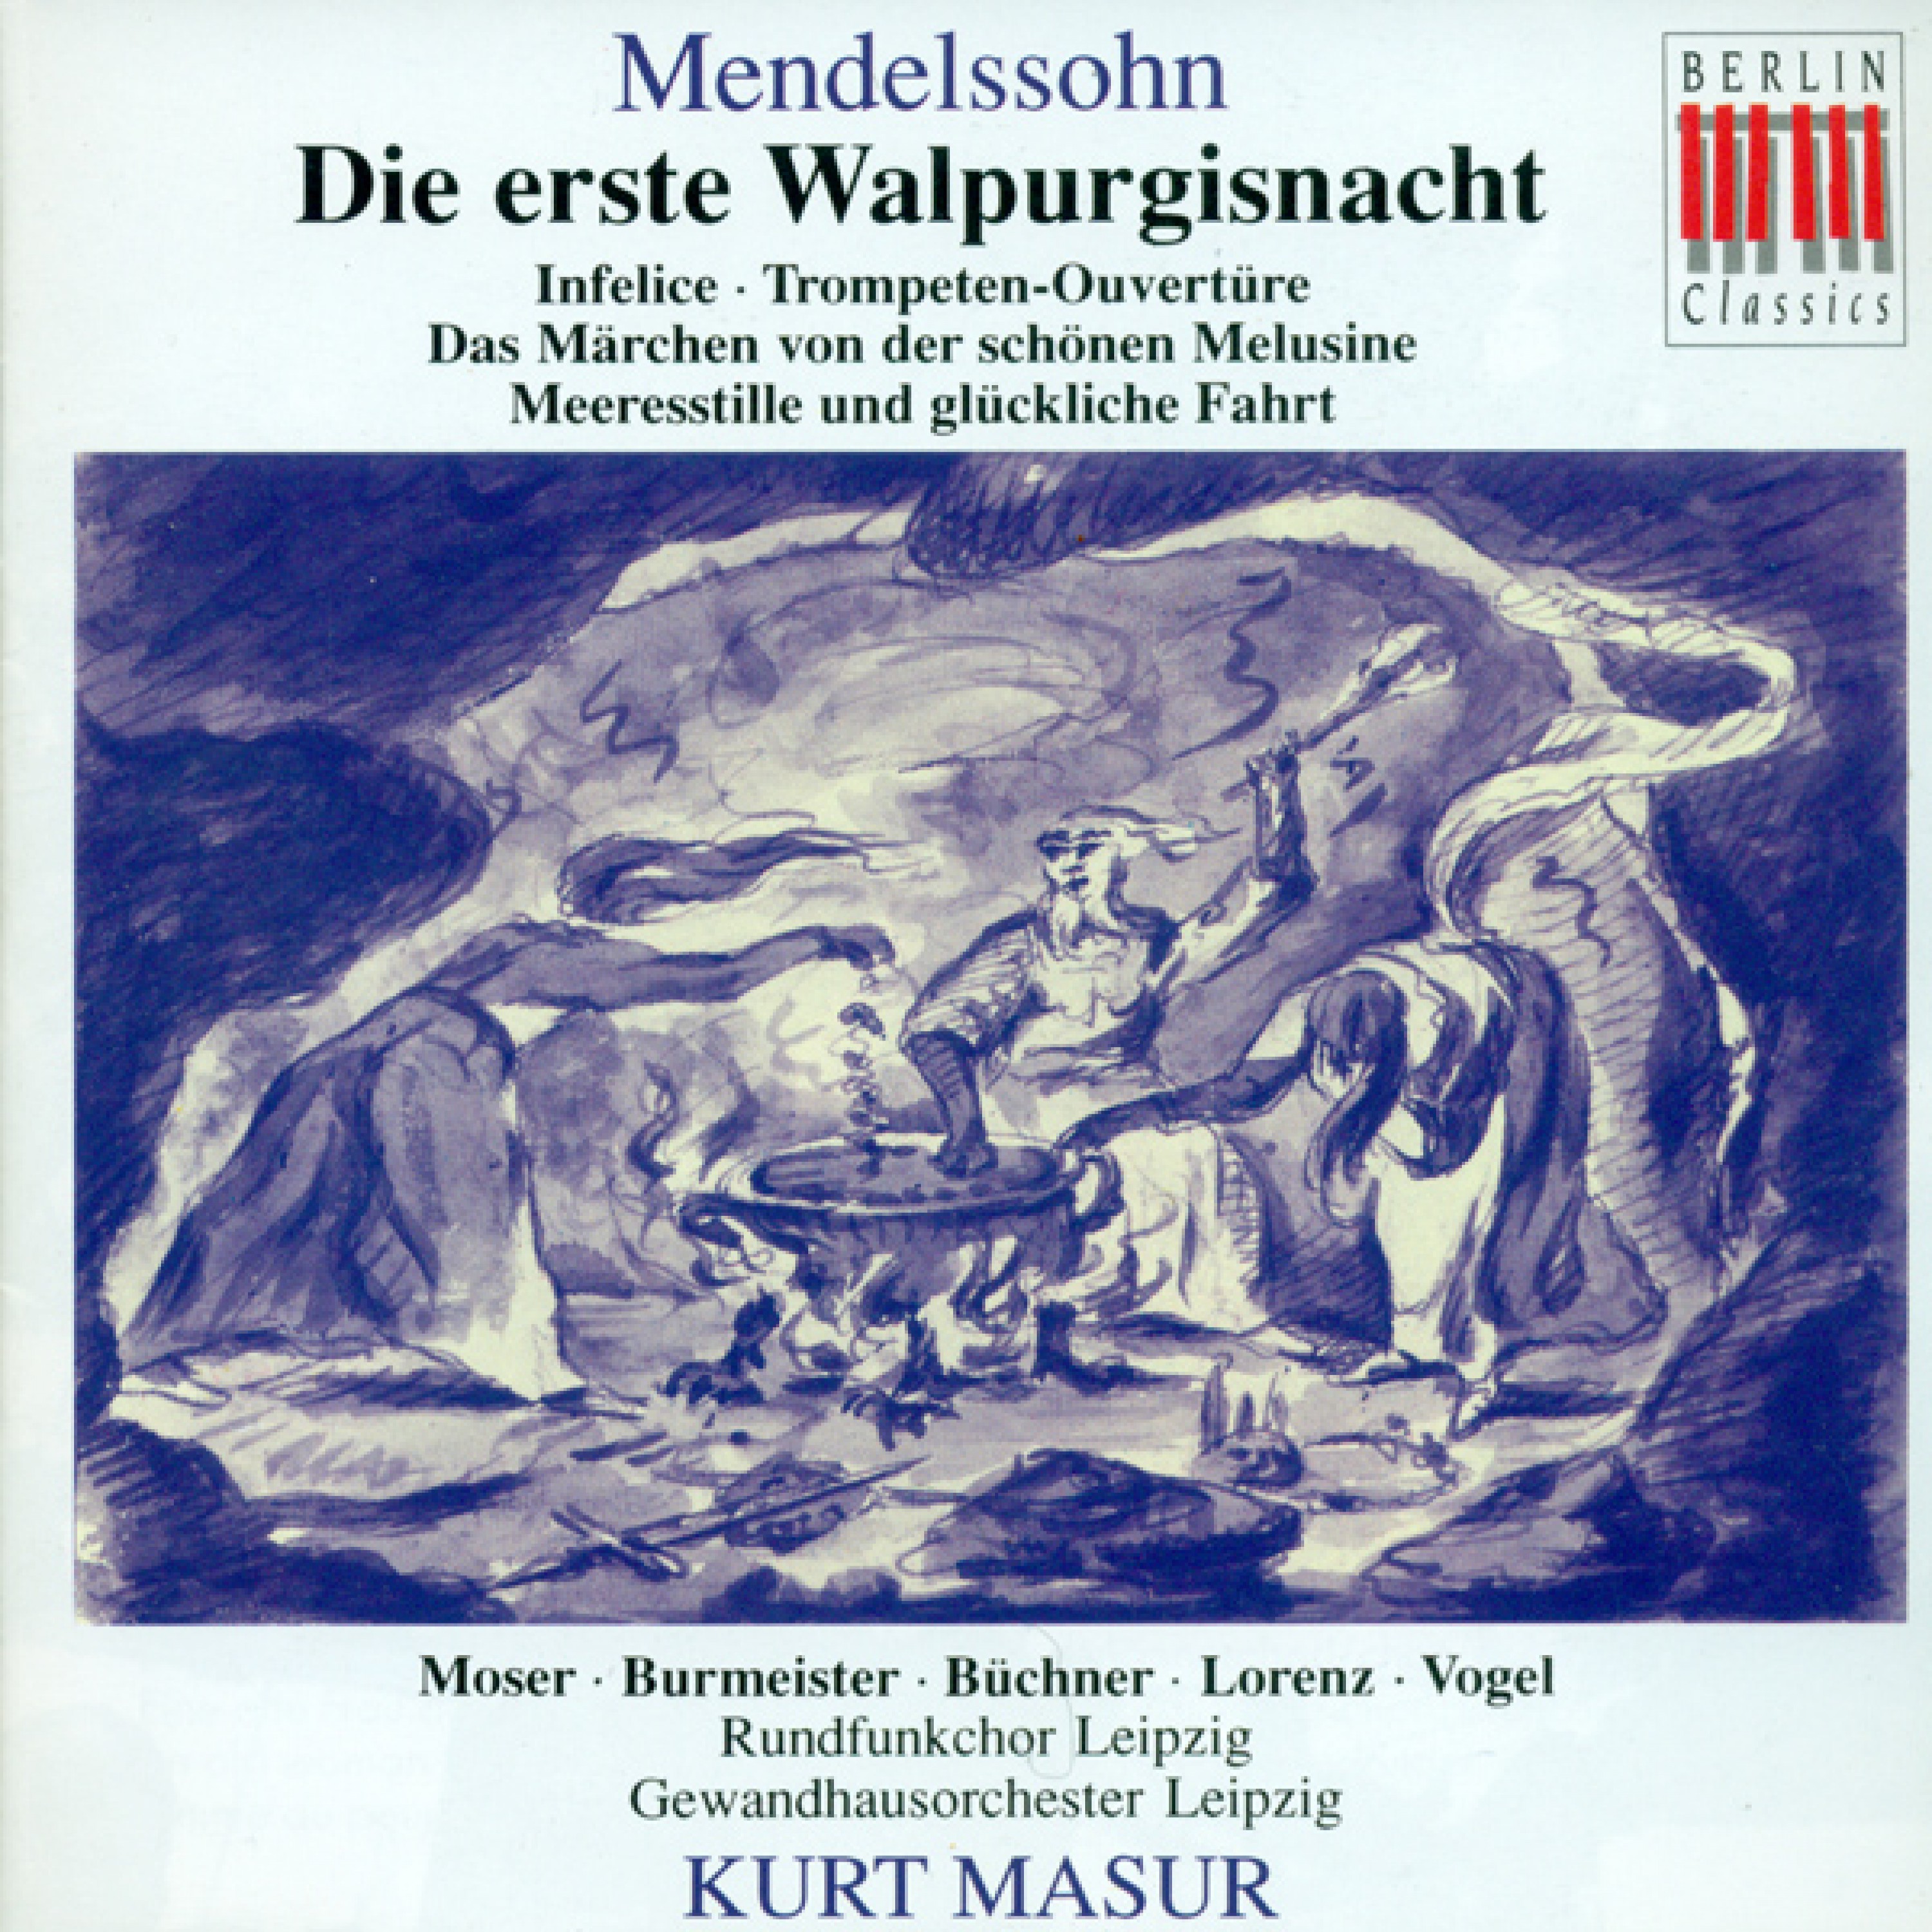 Die erste Walpurgisnacht, Op. 60: Recitative: Diese dumpfen Pfaffenchristen (Bass, Male Chorus)